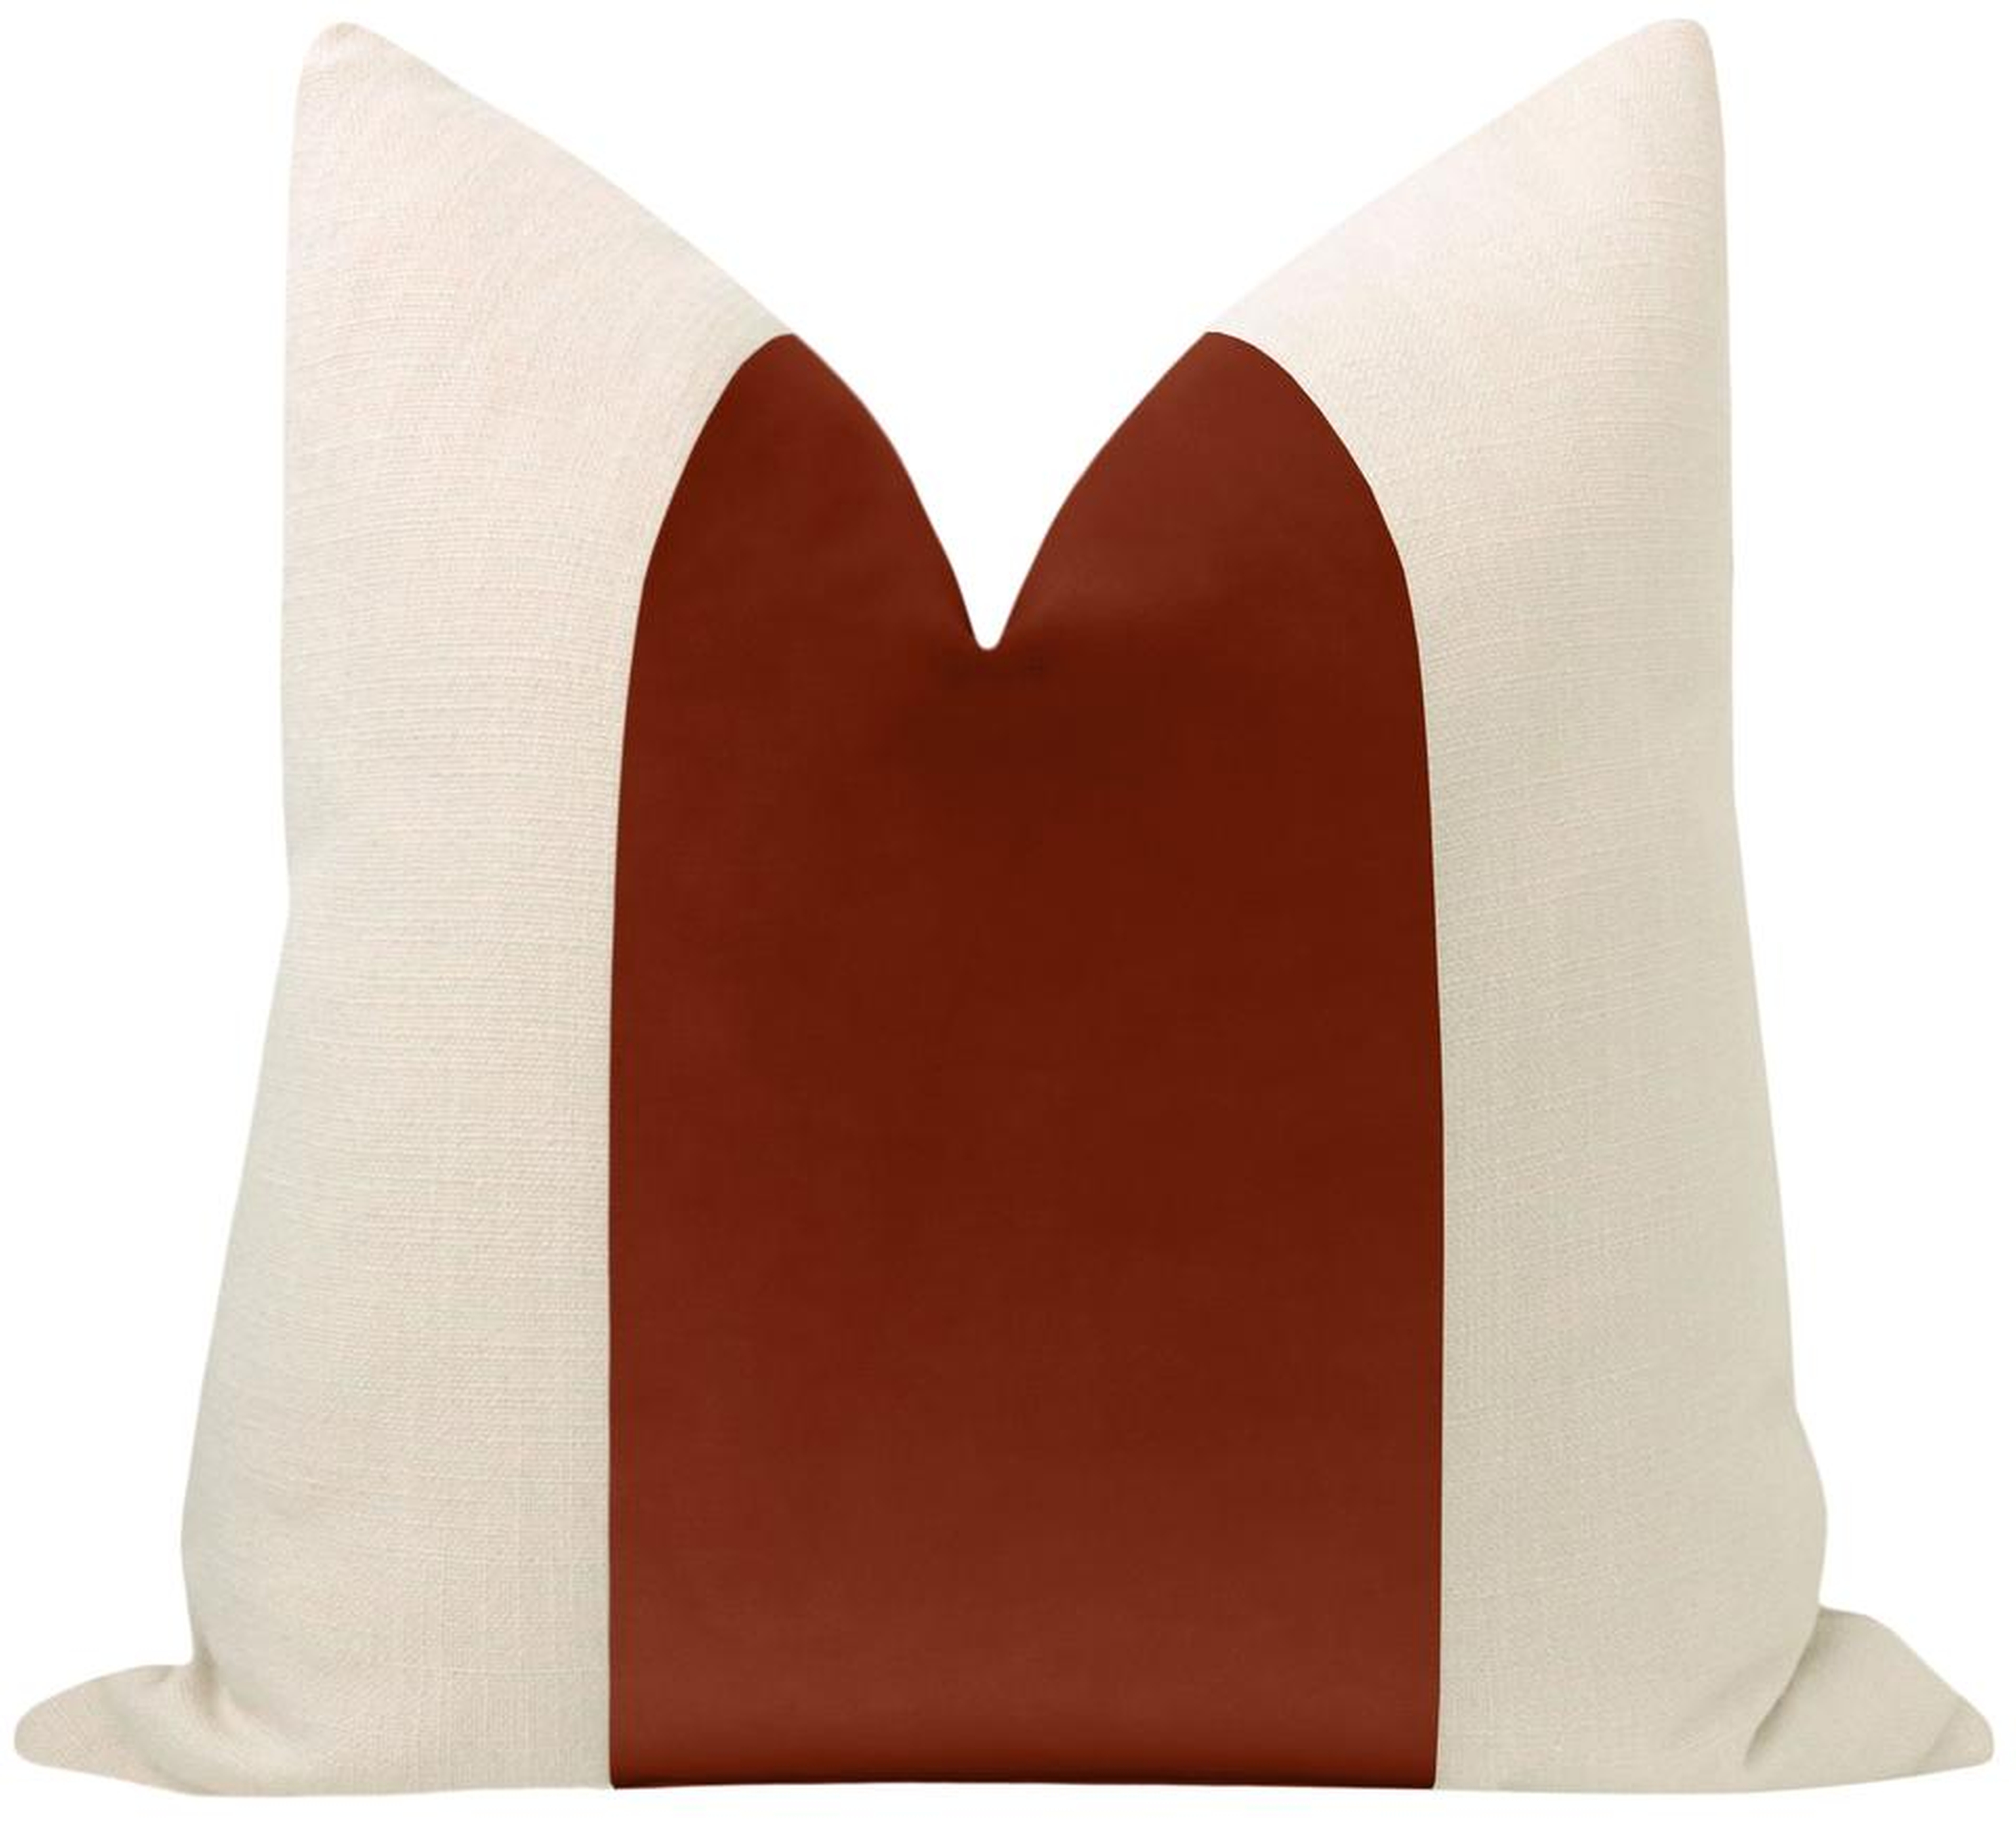 Panel Sonoma Velvet Pillow Cover, Rust, 18" x 18" - Little Design Company